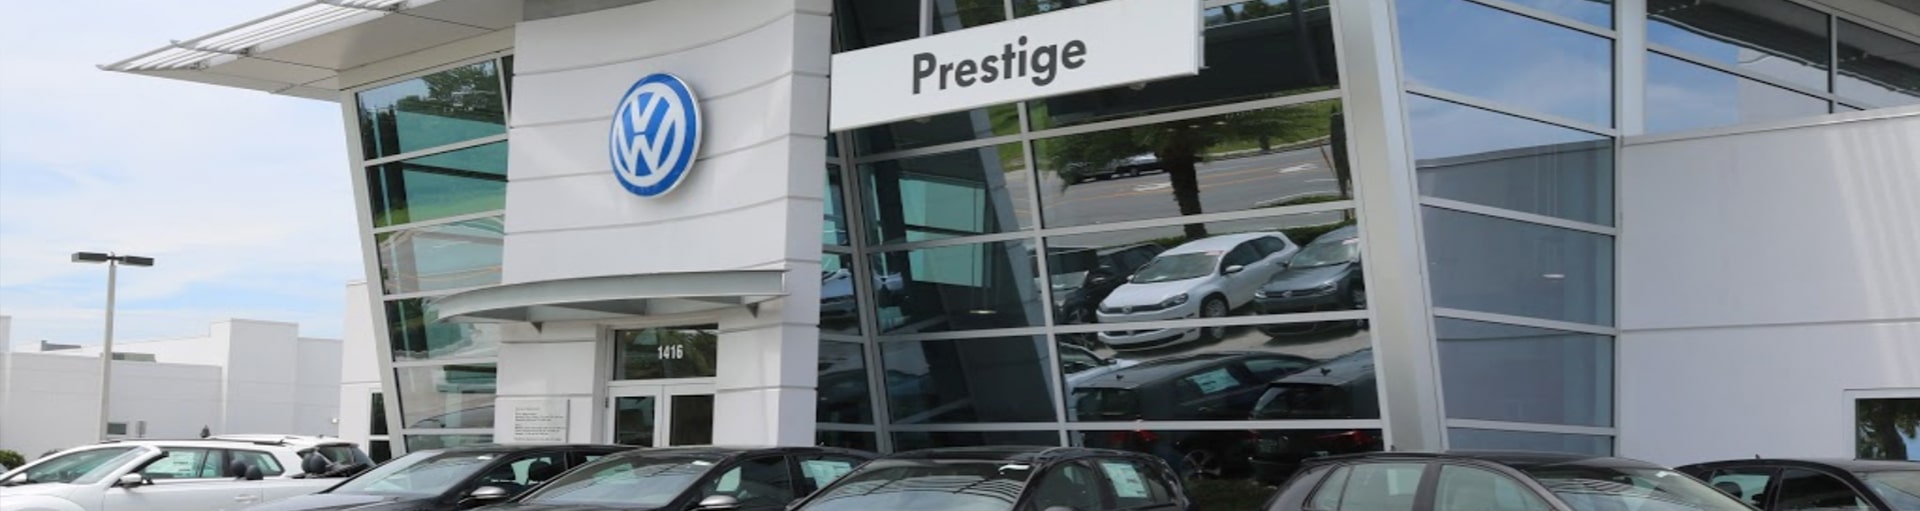 Prestige Volkswagen of Melbourne Check Engine Light Diagnosis